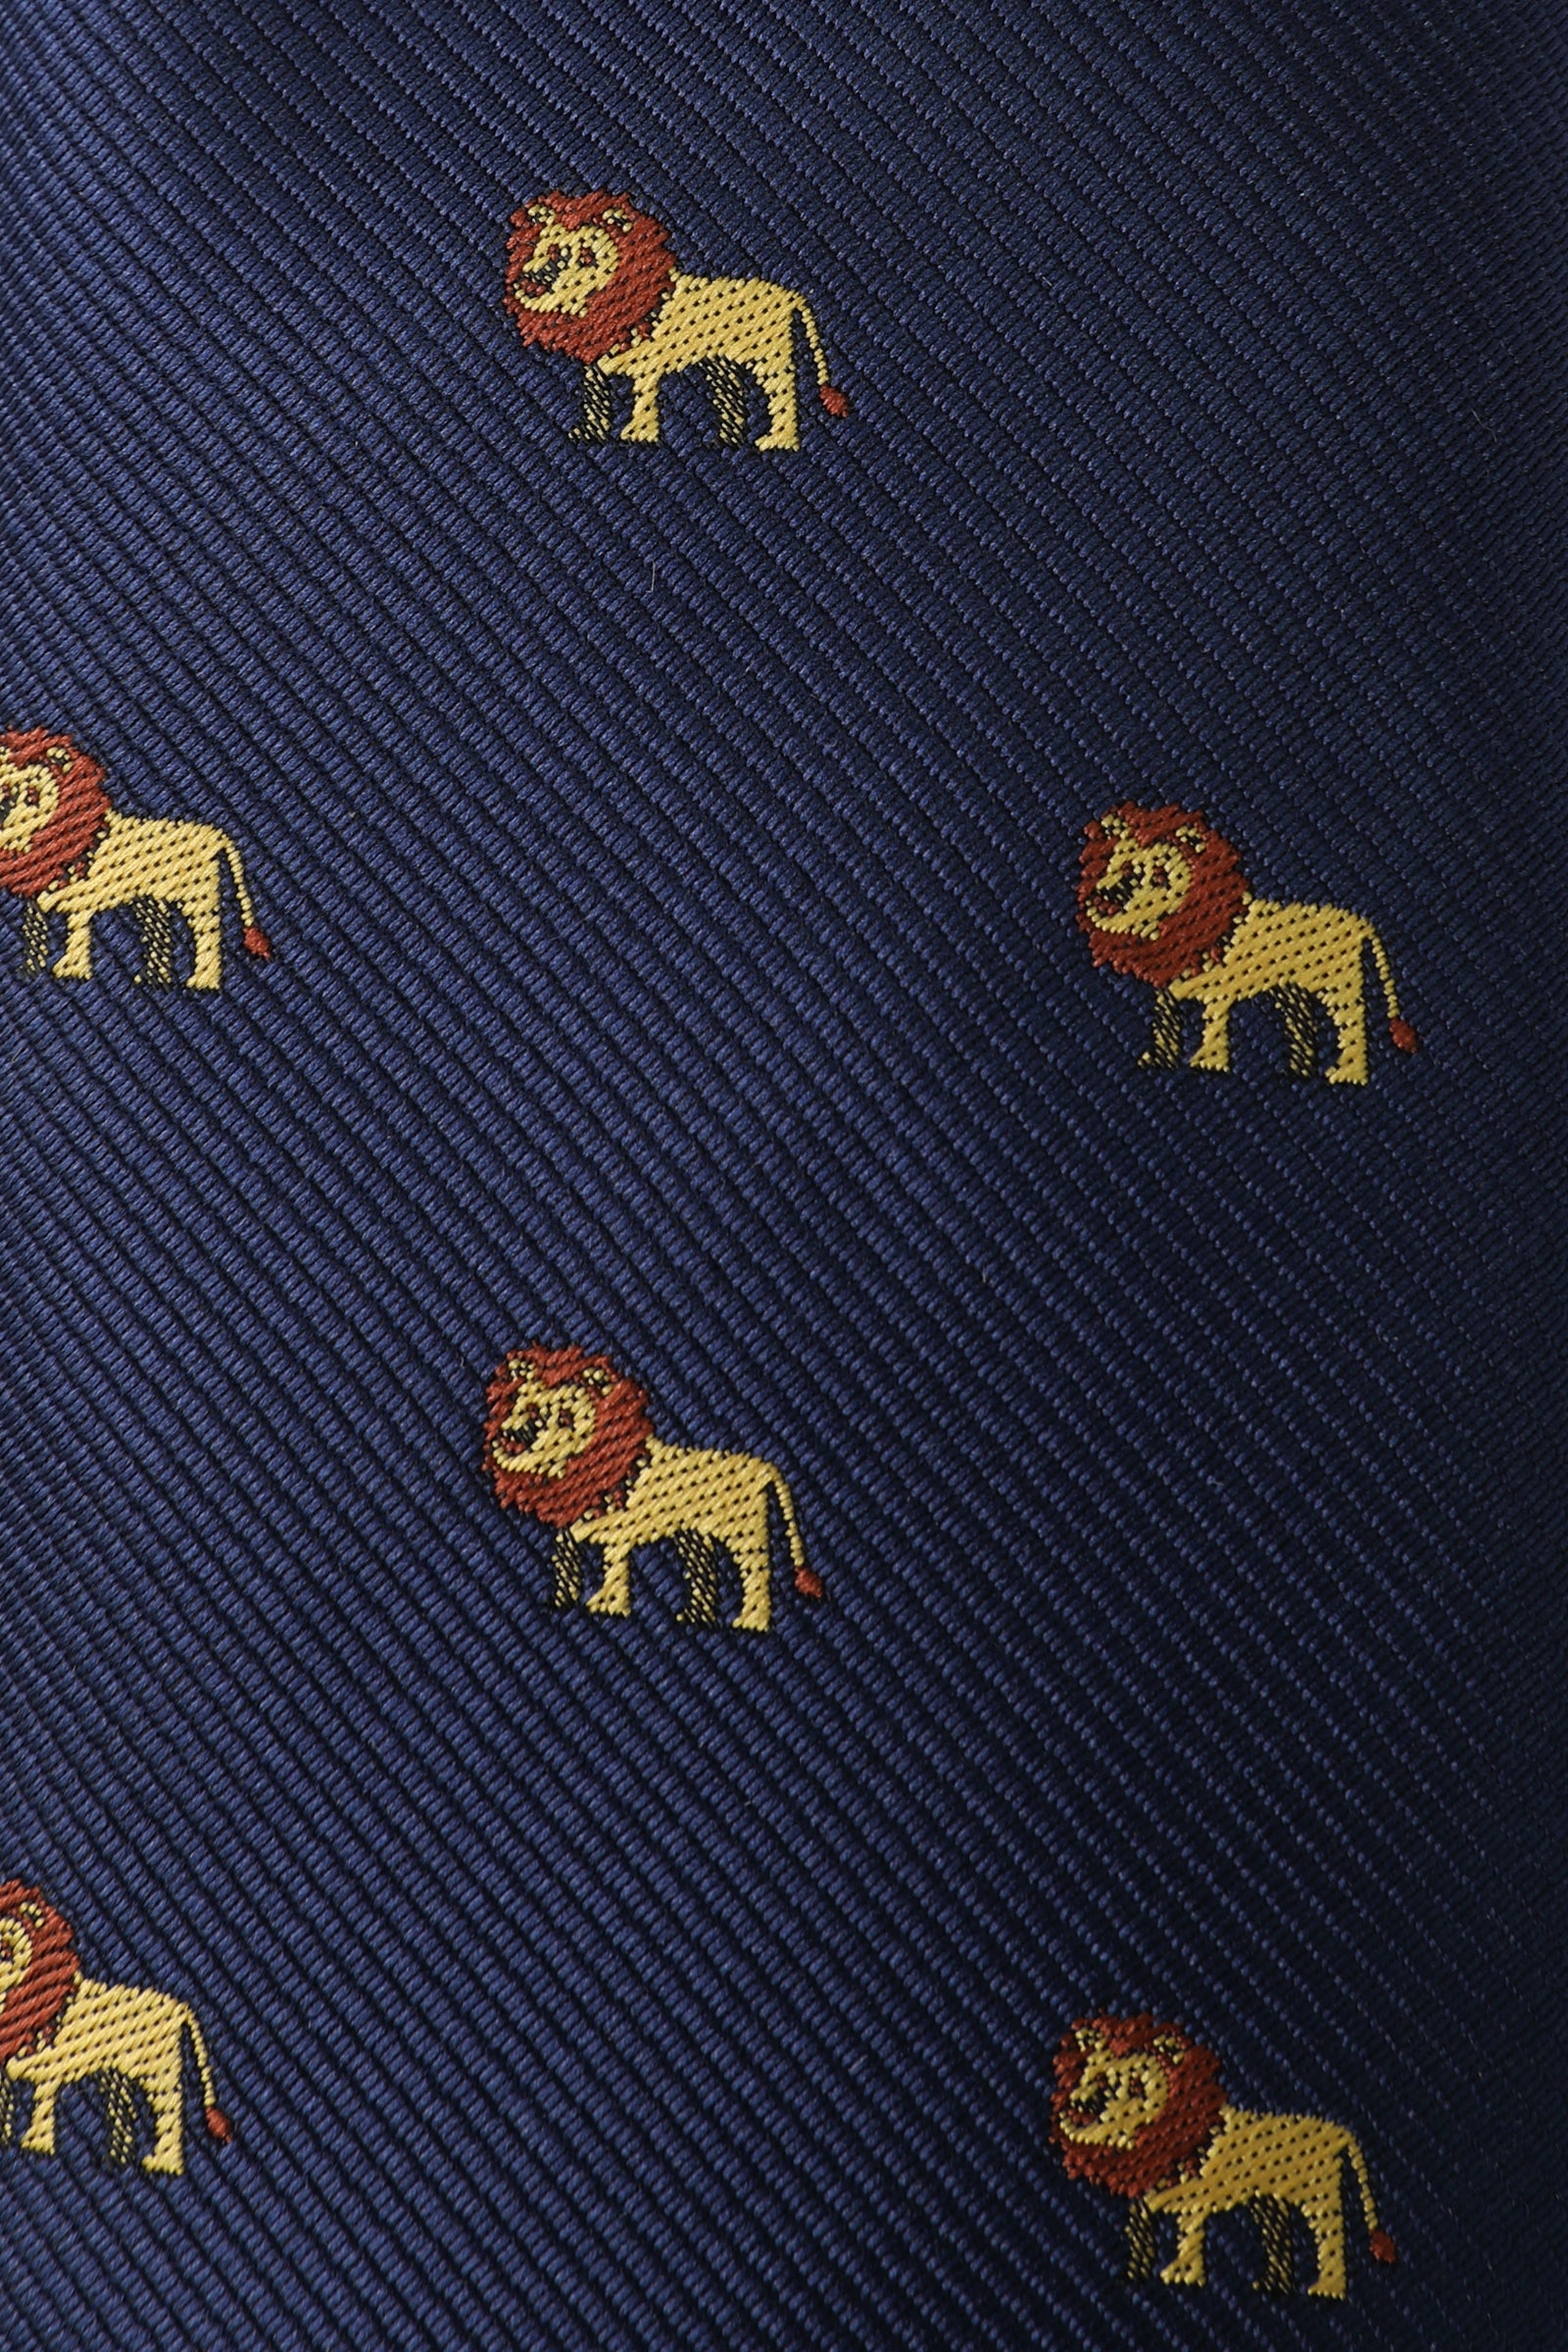 African Lion Kids Necktie Fabric